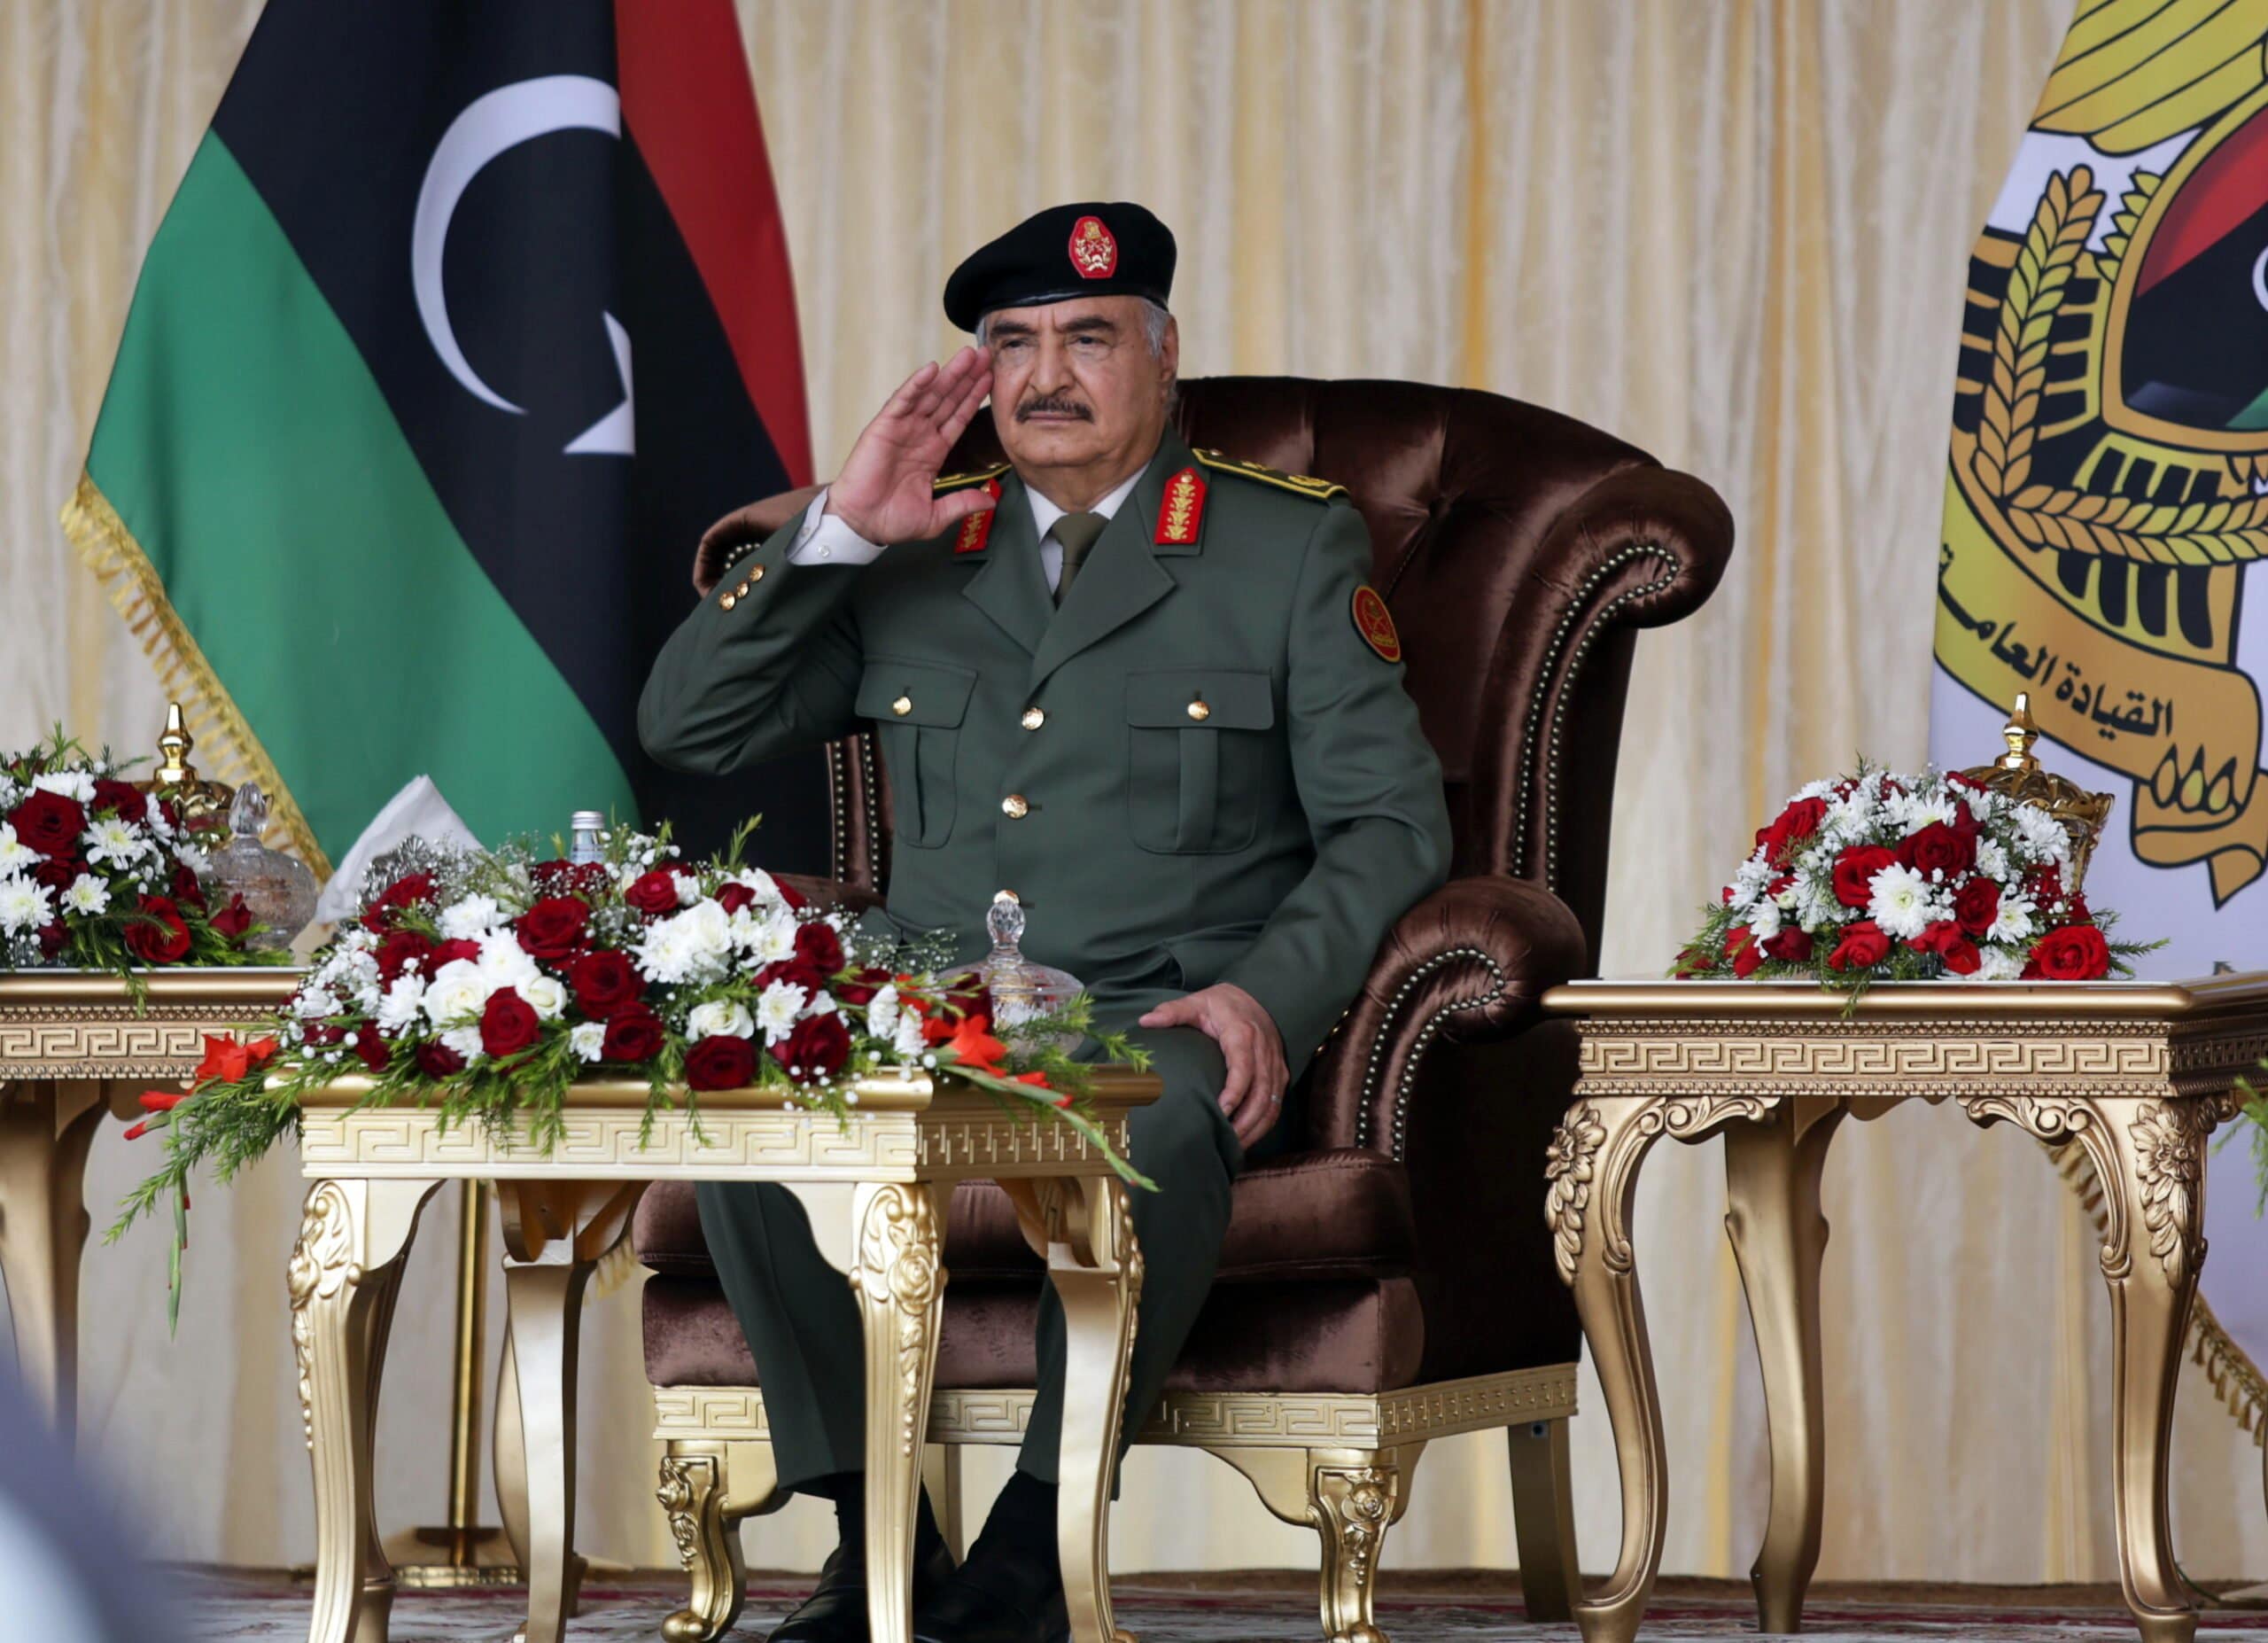 خليفة حفتر يحكم شرق ليبيا بالإعدام والإخفاء القسري ويبني نظاماً كنظام السيسي watanserb.com